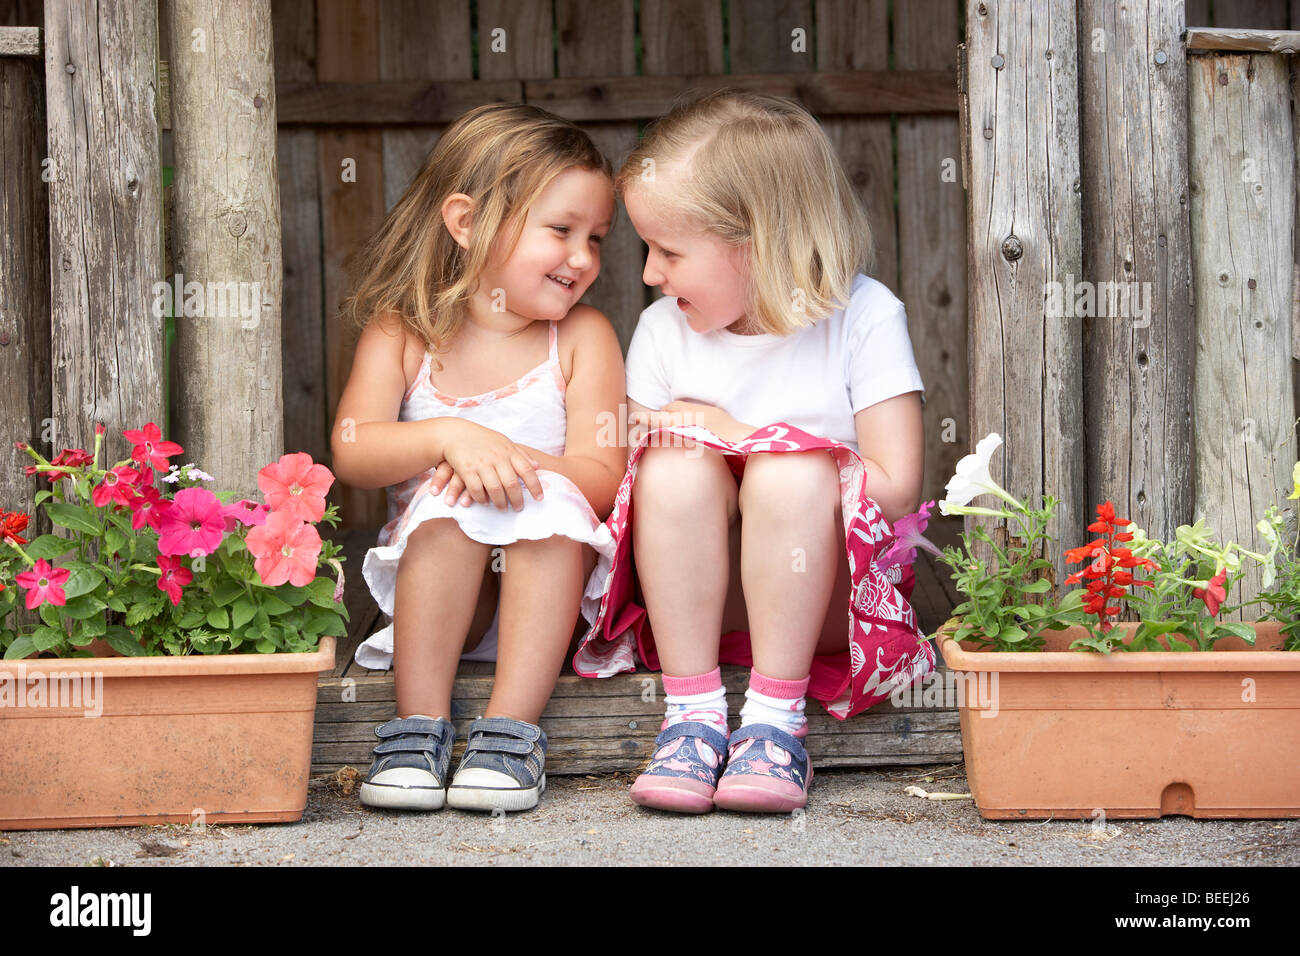 Zwei junge Mädchen spielen im Holzhaus Stockfoto